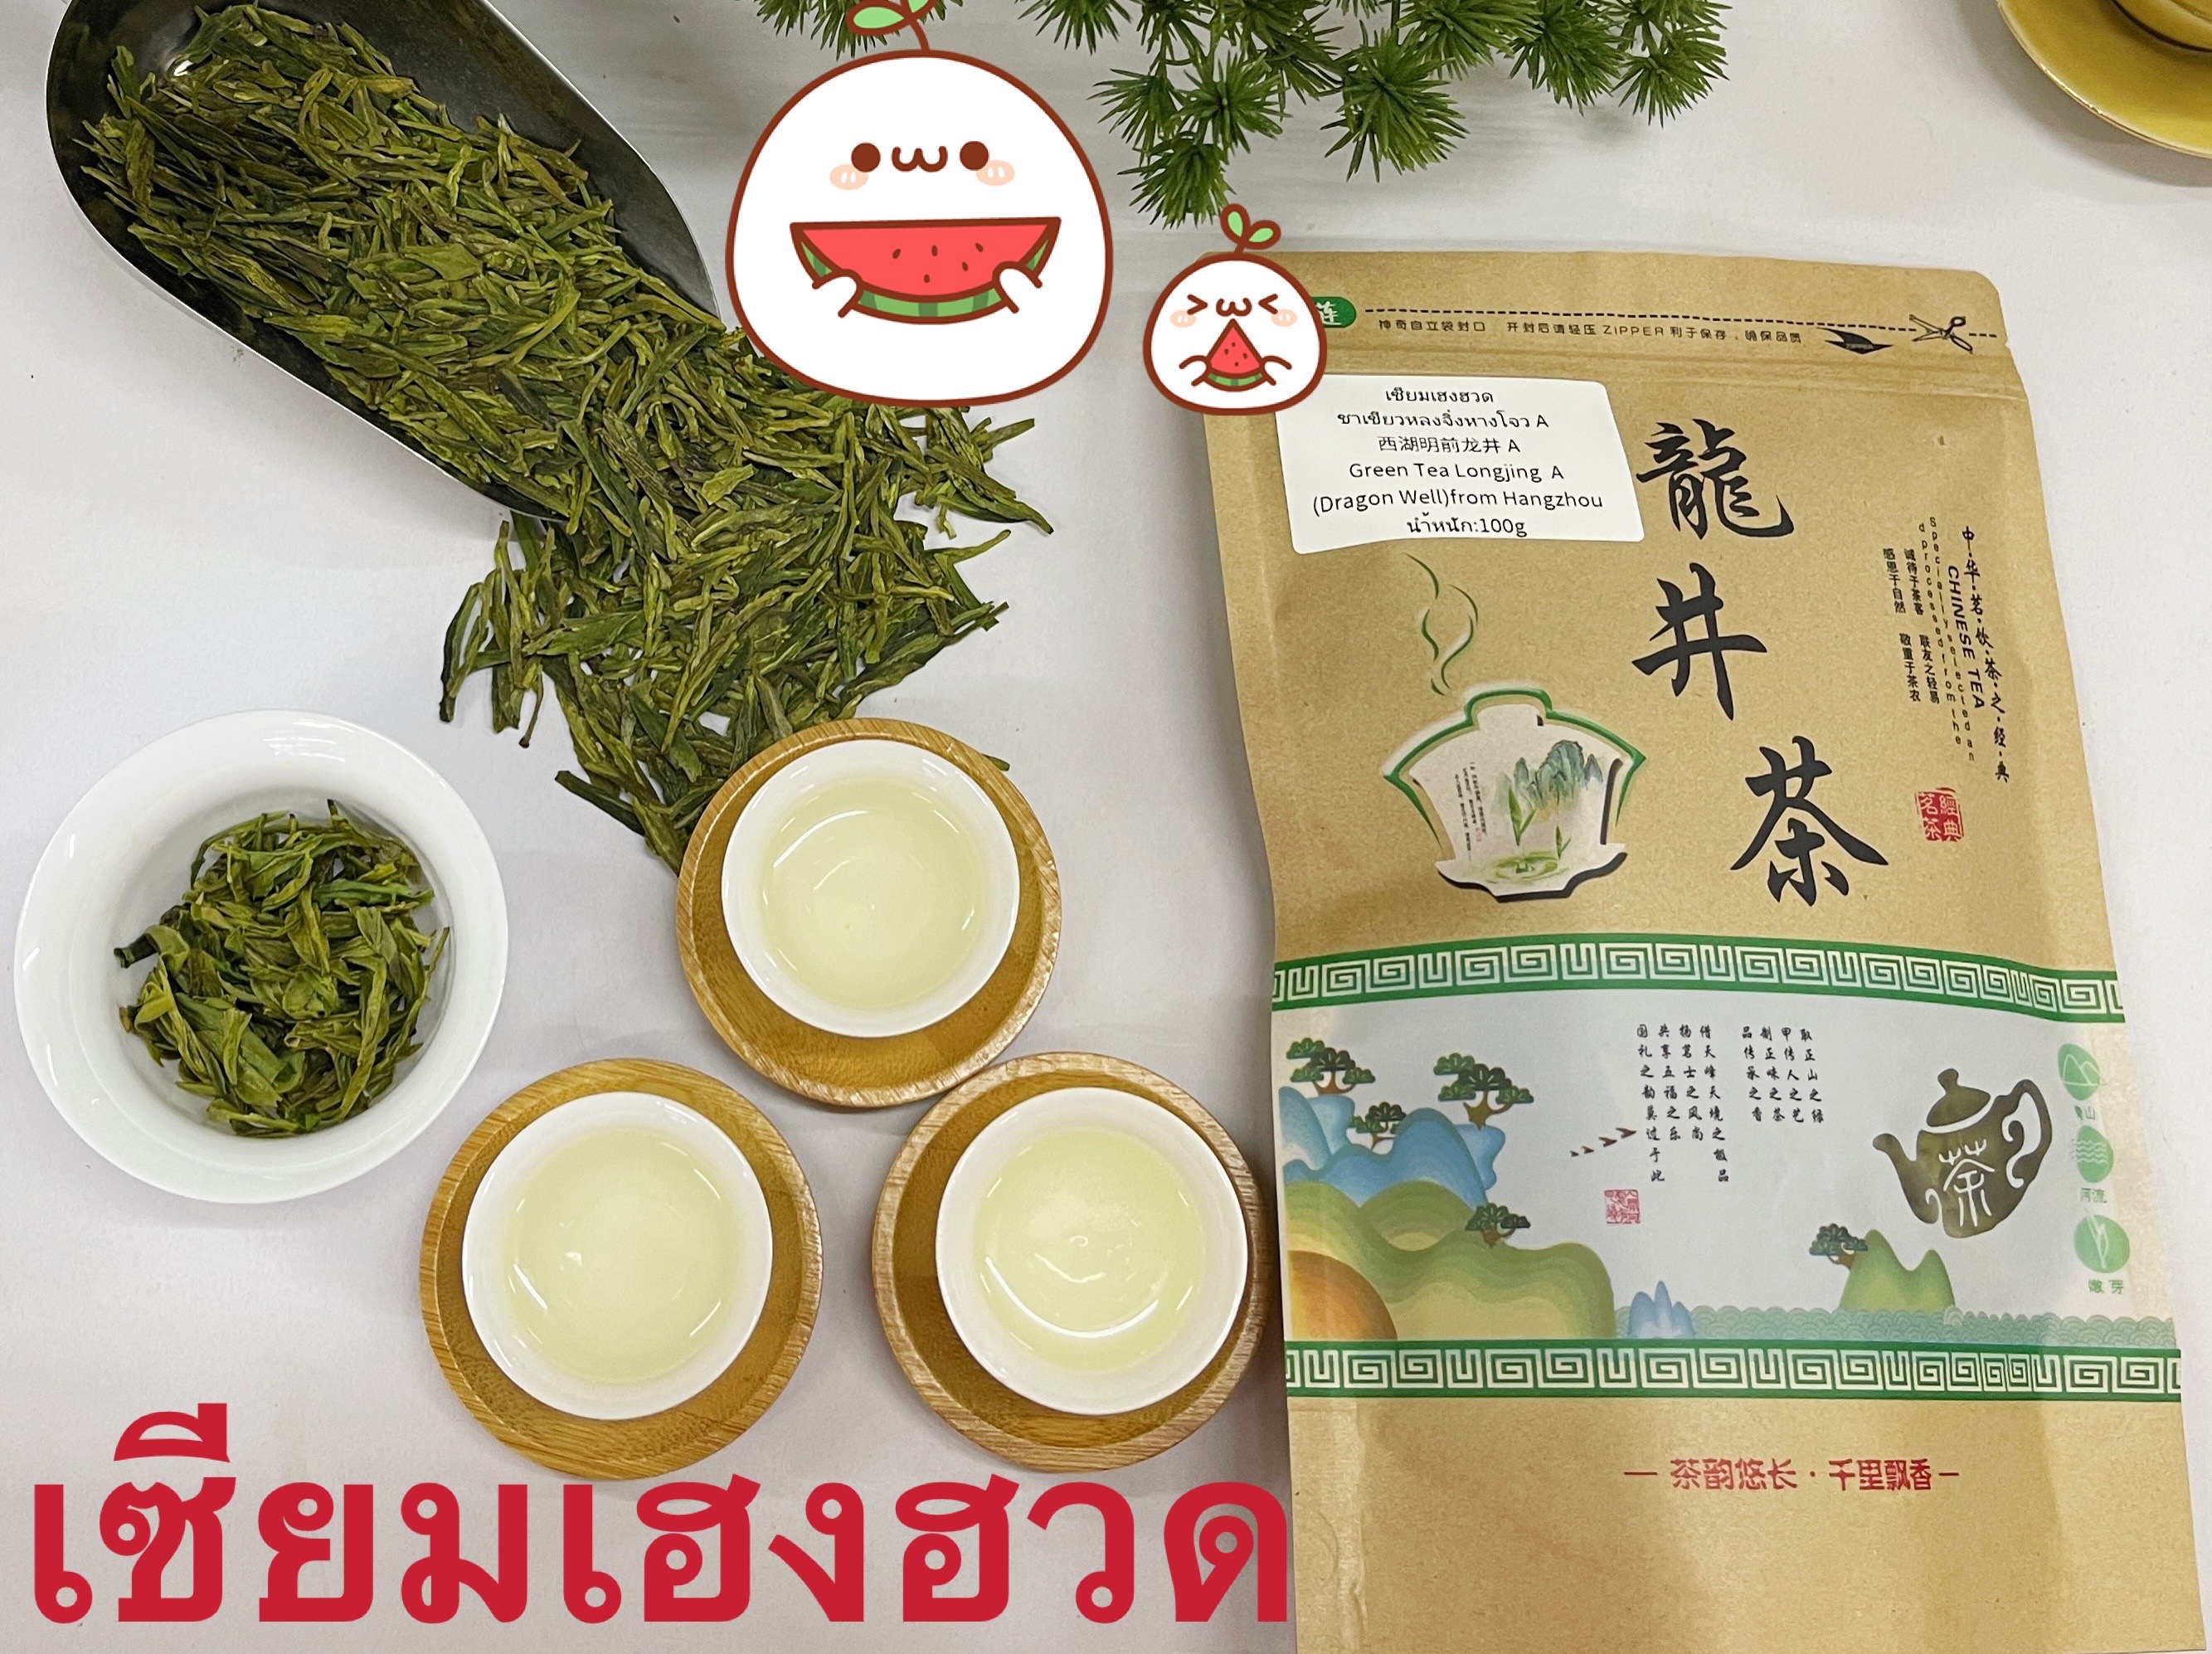 รายละเอียดเพิ่มเติมเกี่ยวกับ ชาเขียวหลงจิ่งหางโจว A 西湖龙井 A Green Tea Longjing(Dragon Well)from Hangzhou A